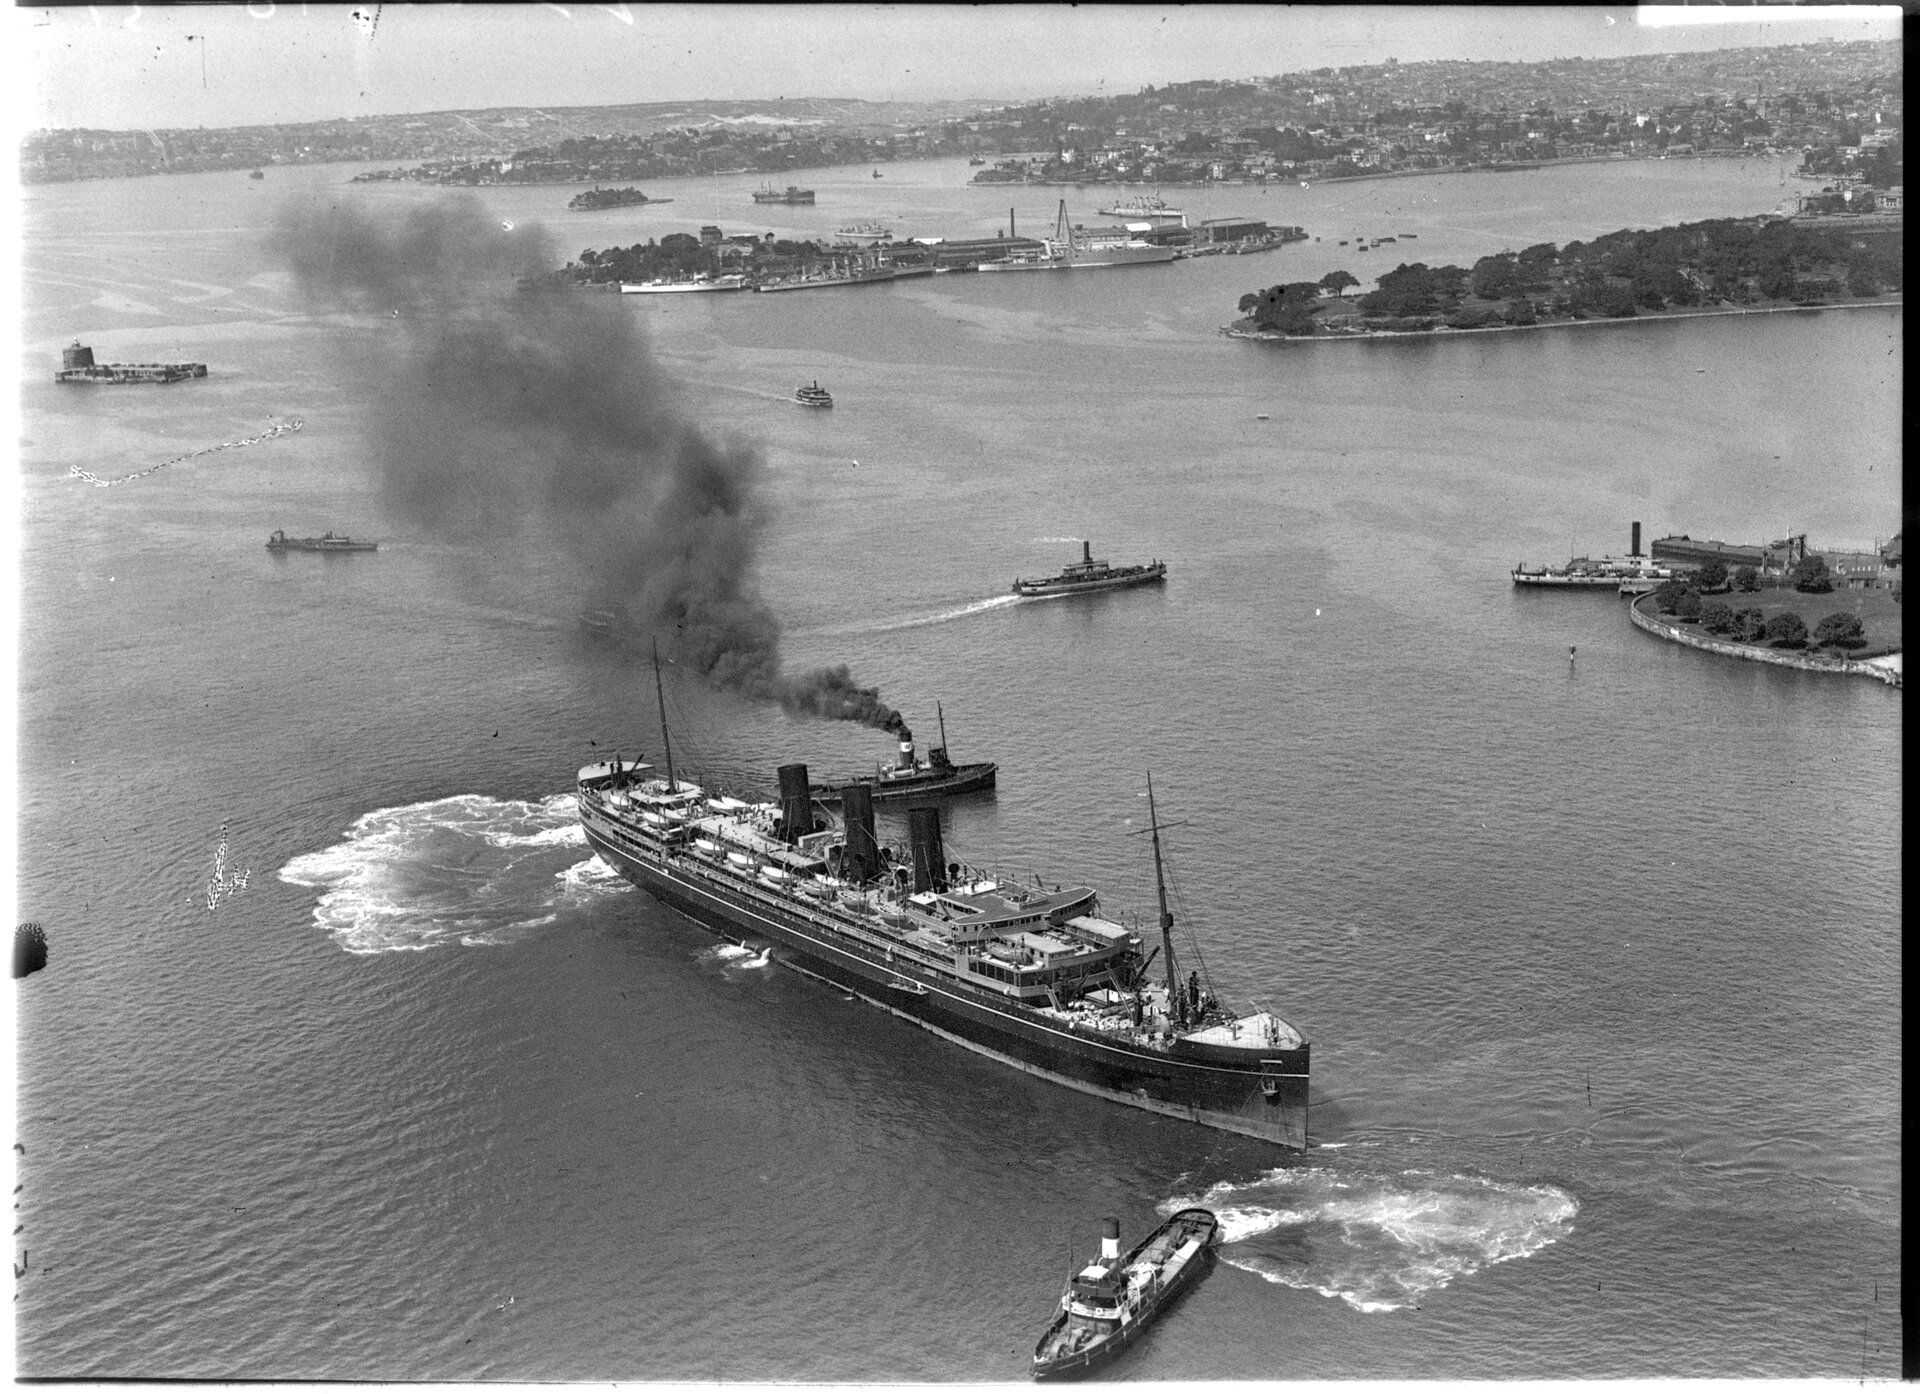 Ocean liner in Sydney Harbour